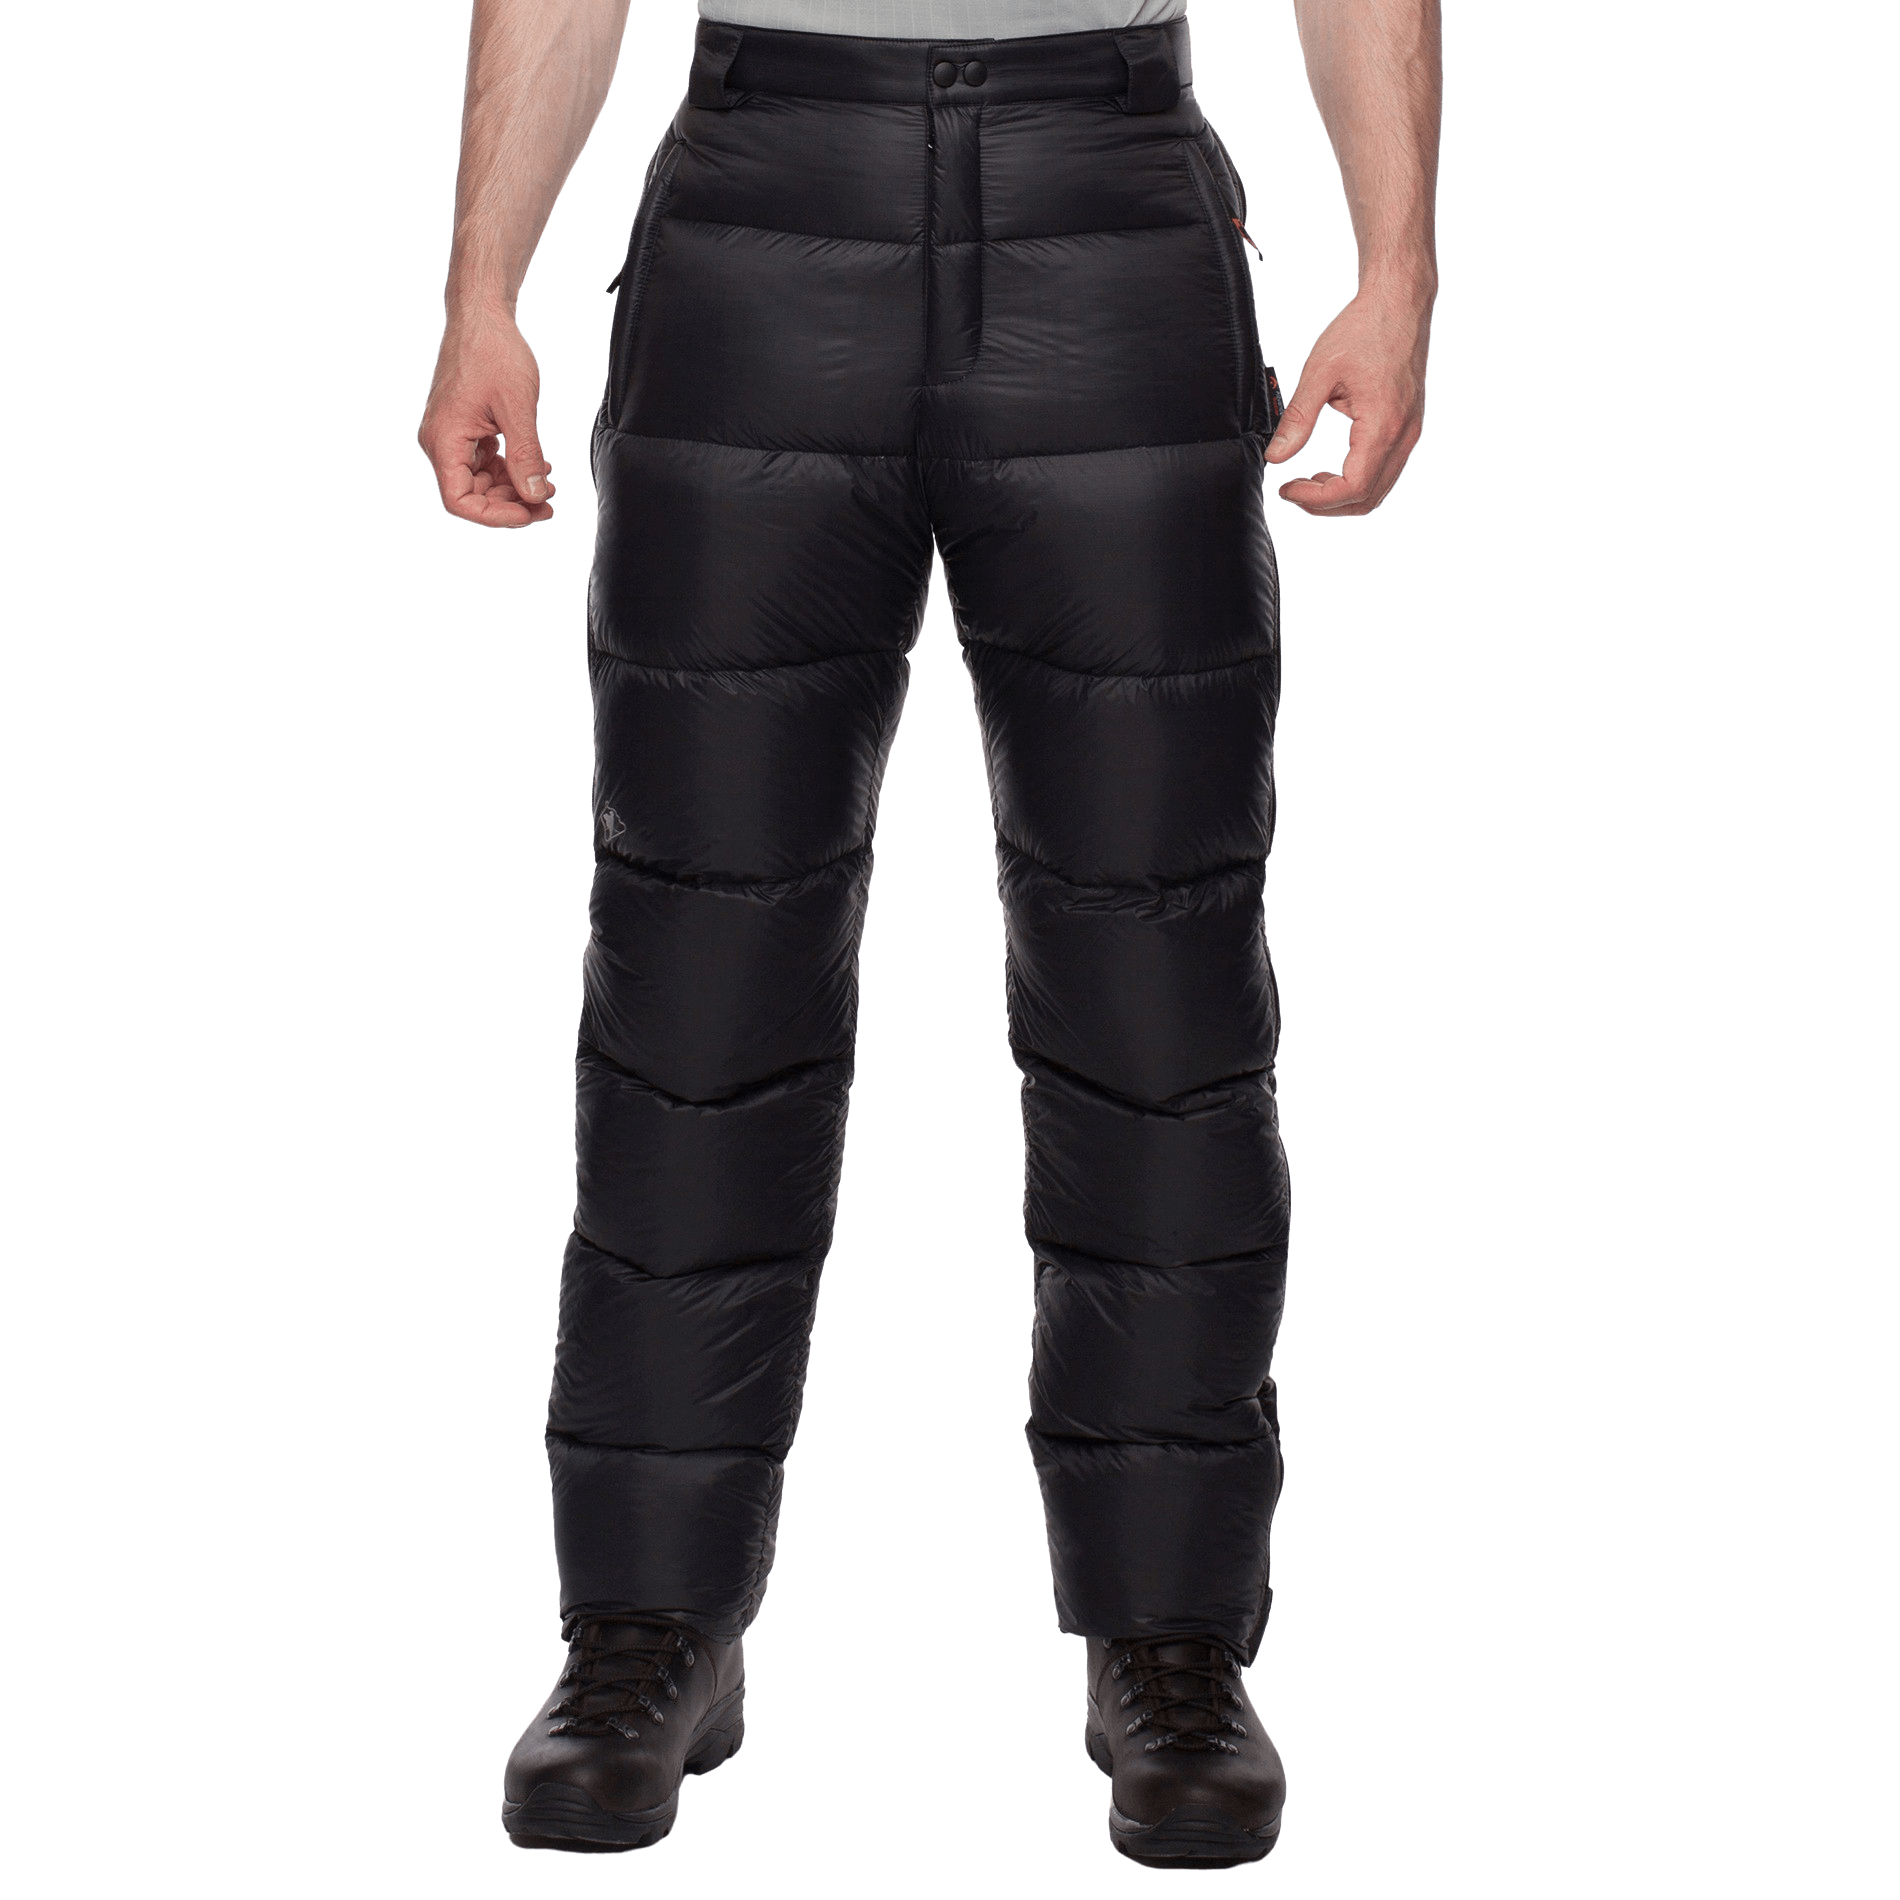 Пуховые брюки BASK, размер 48, цвет черный 3323-9009-048 Meribel v3 - фото 2